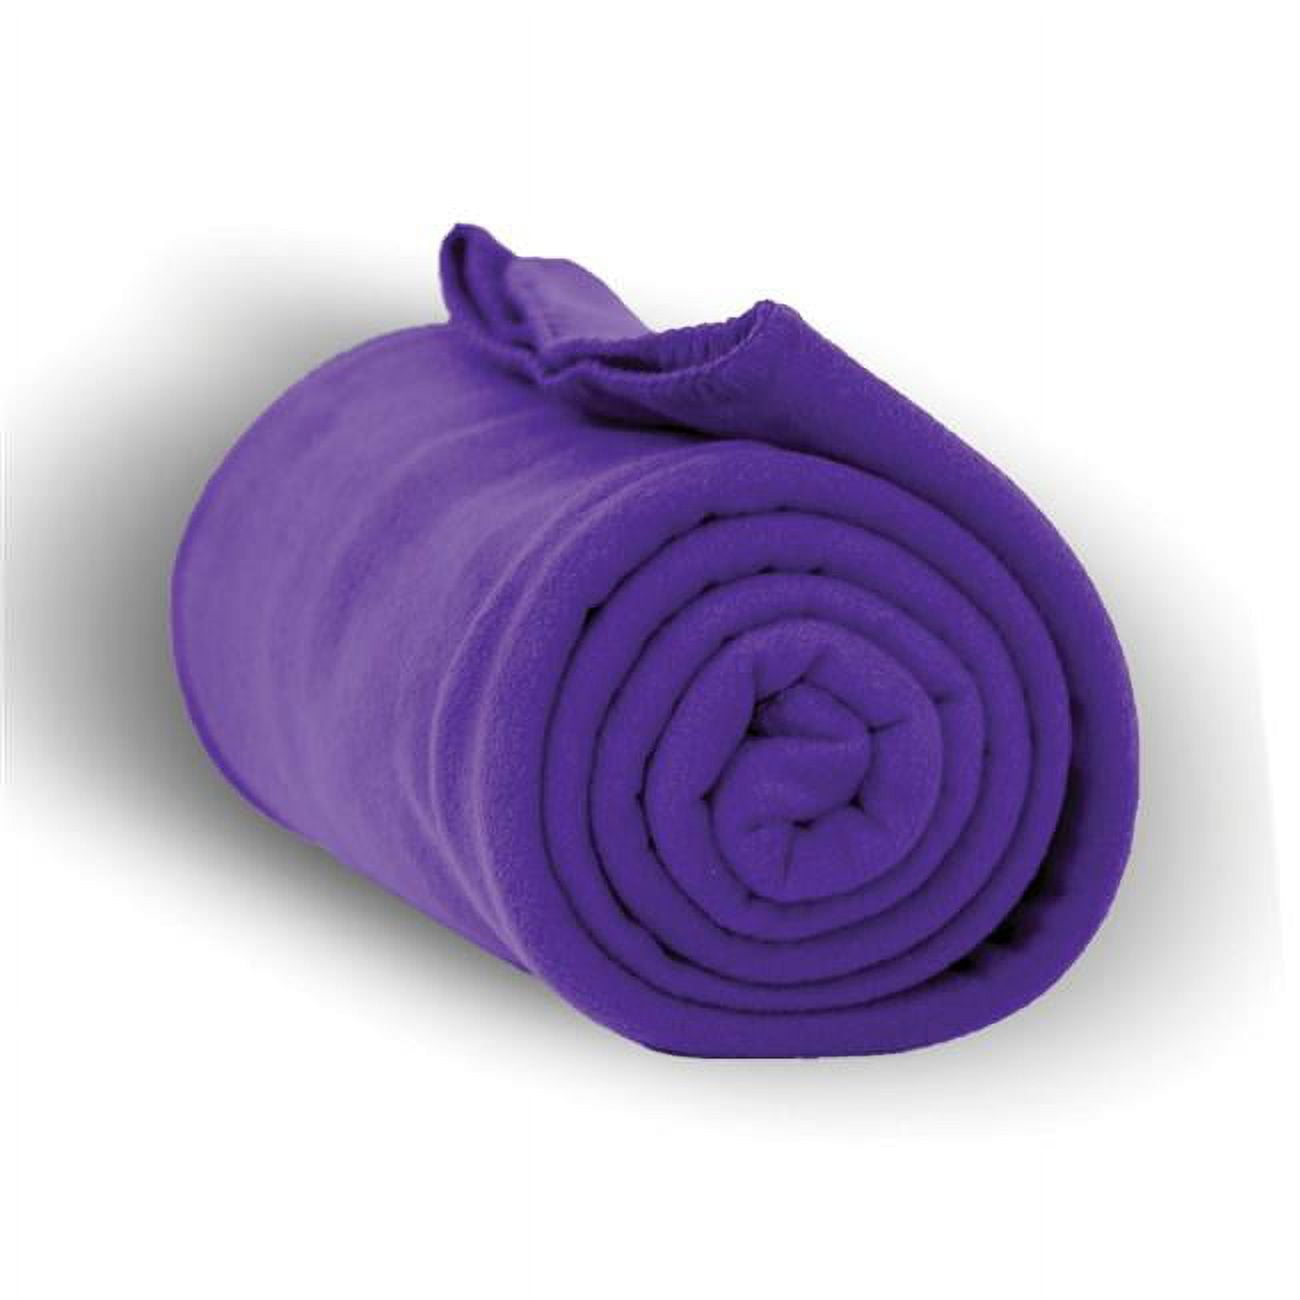 2327055 50 X 60 In. Heavy Weight Fleece Blanket Throw - Purple, Case Of 24